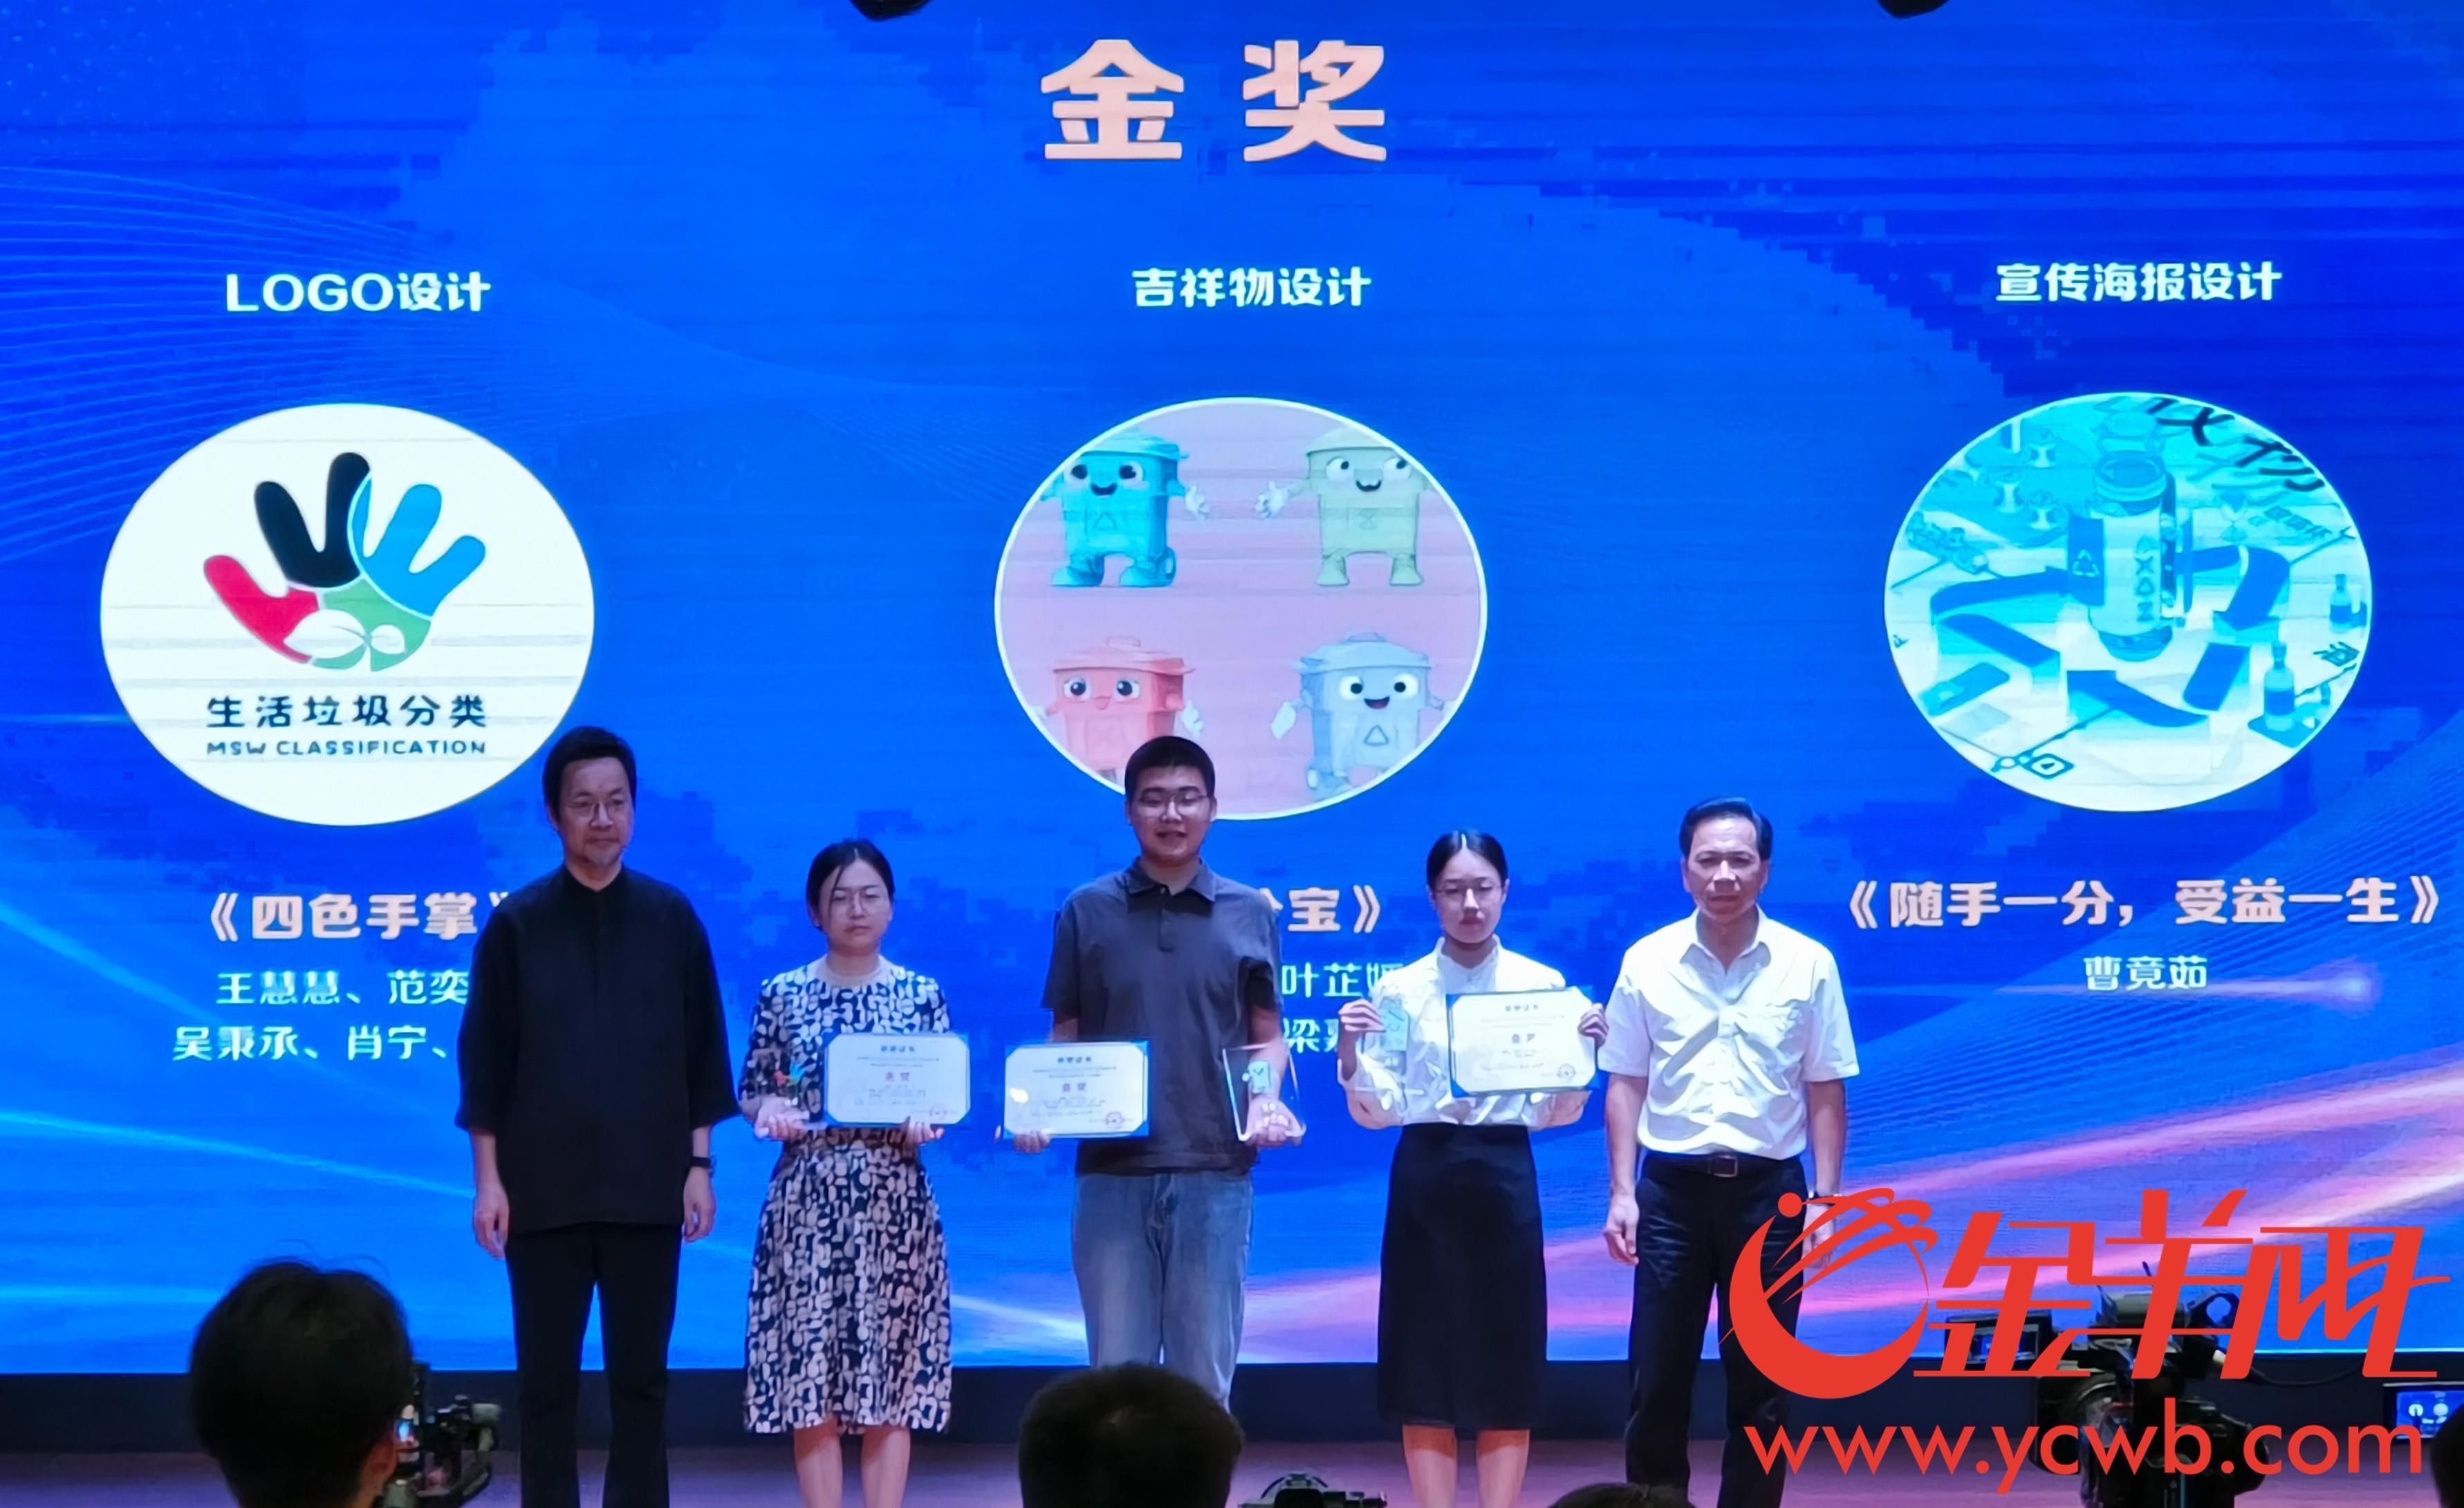 广州垃圾分类标识创意作品斩获邦度级奖项来